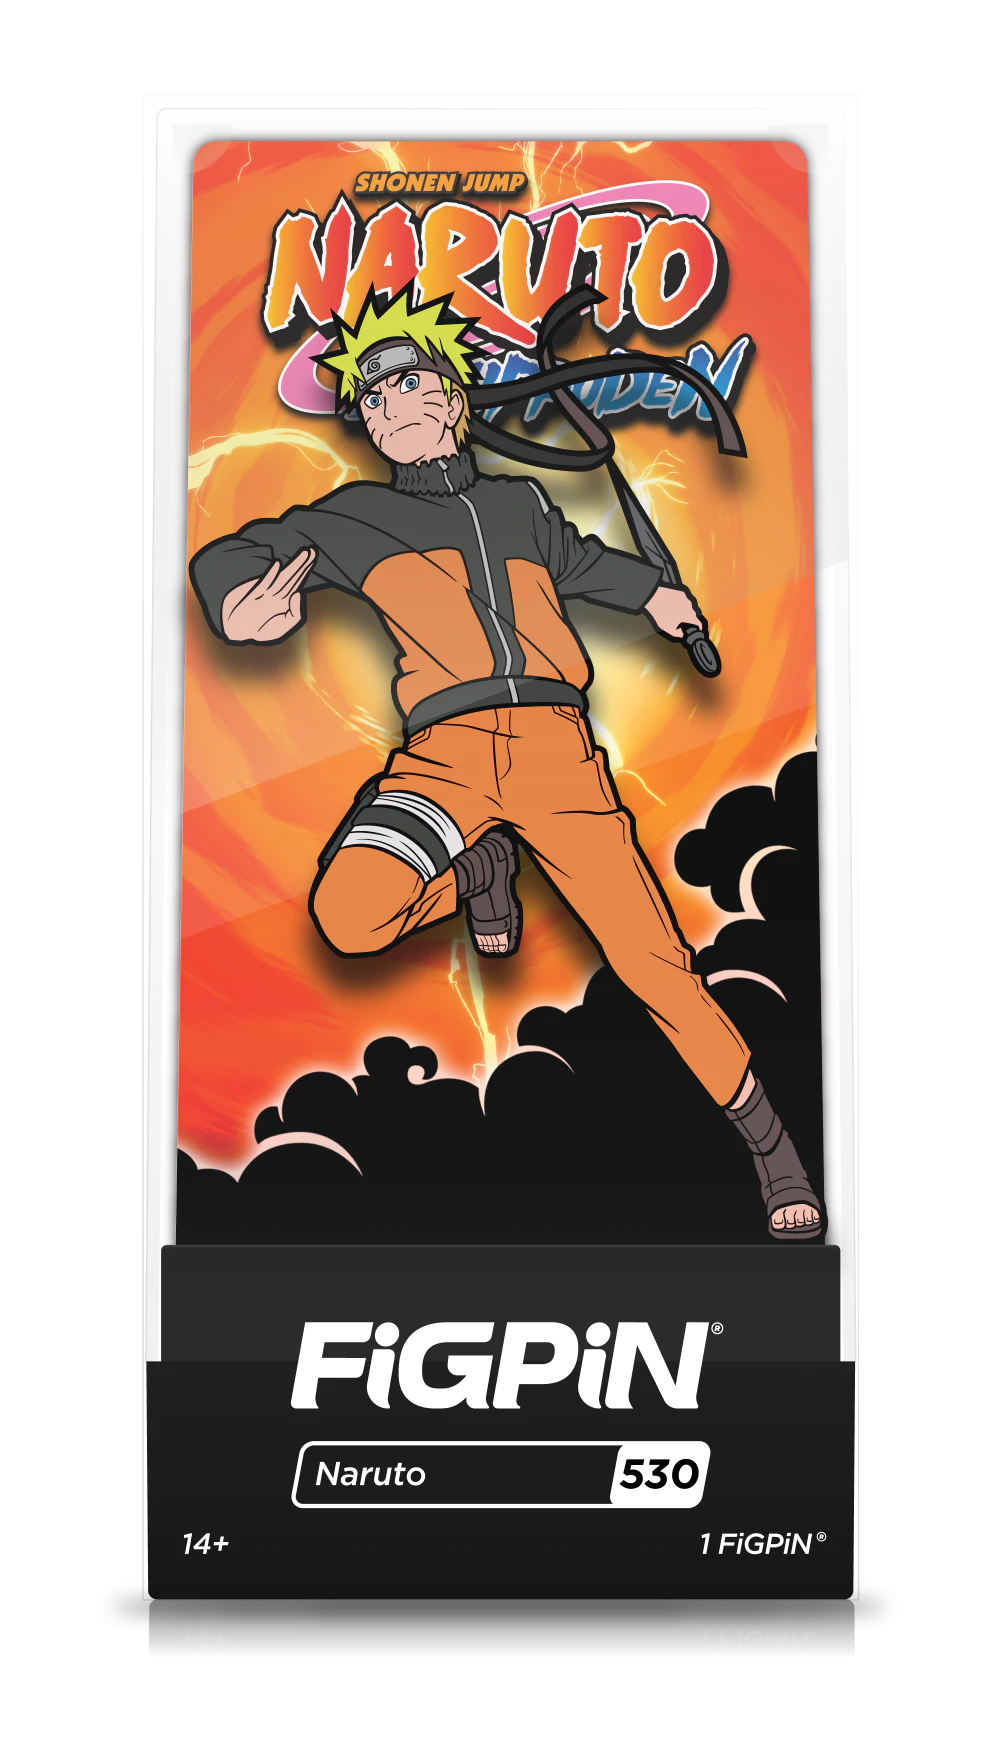 Load image into Gallery viewer, Naruto Uzumaki V2 (#530) Naruto Shippuden FiGPiN
